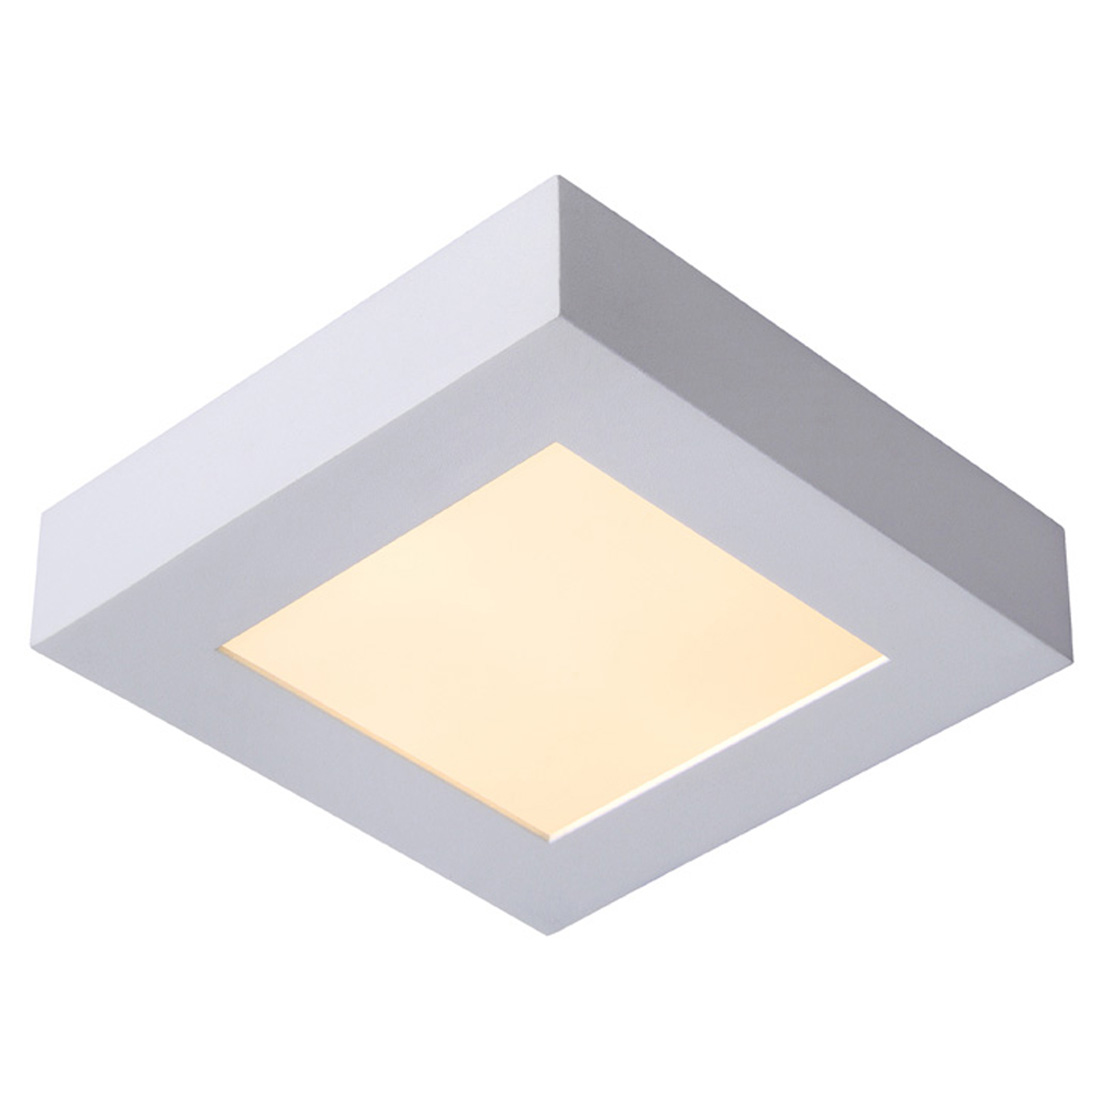 FocusLight SLIM LED - Ceiling light - White - Integrated LED - 15W LED (incl.)